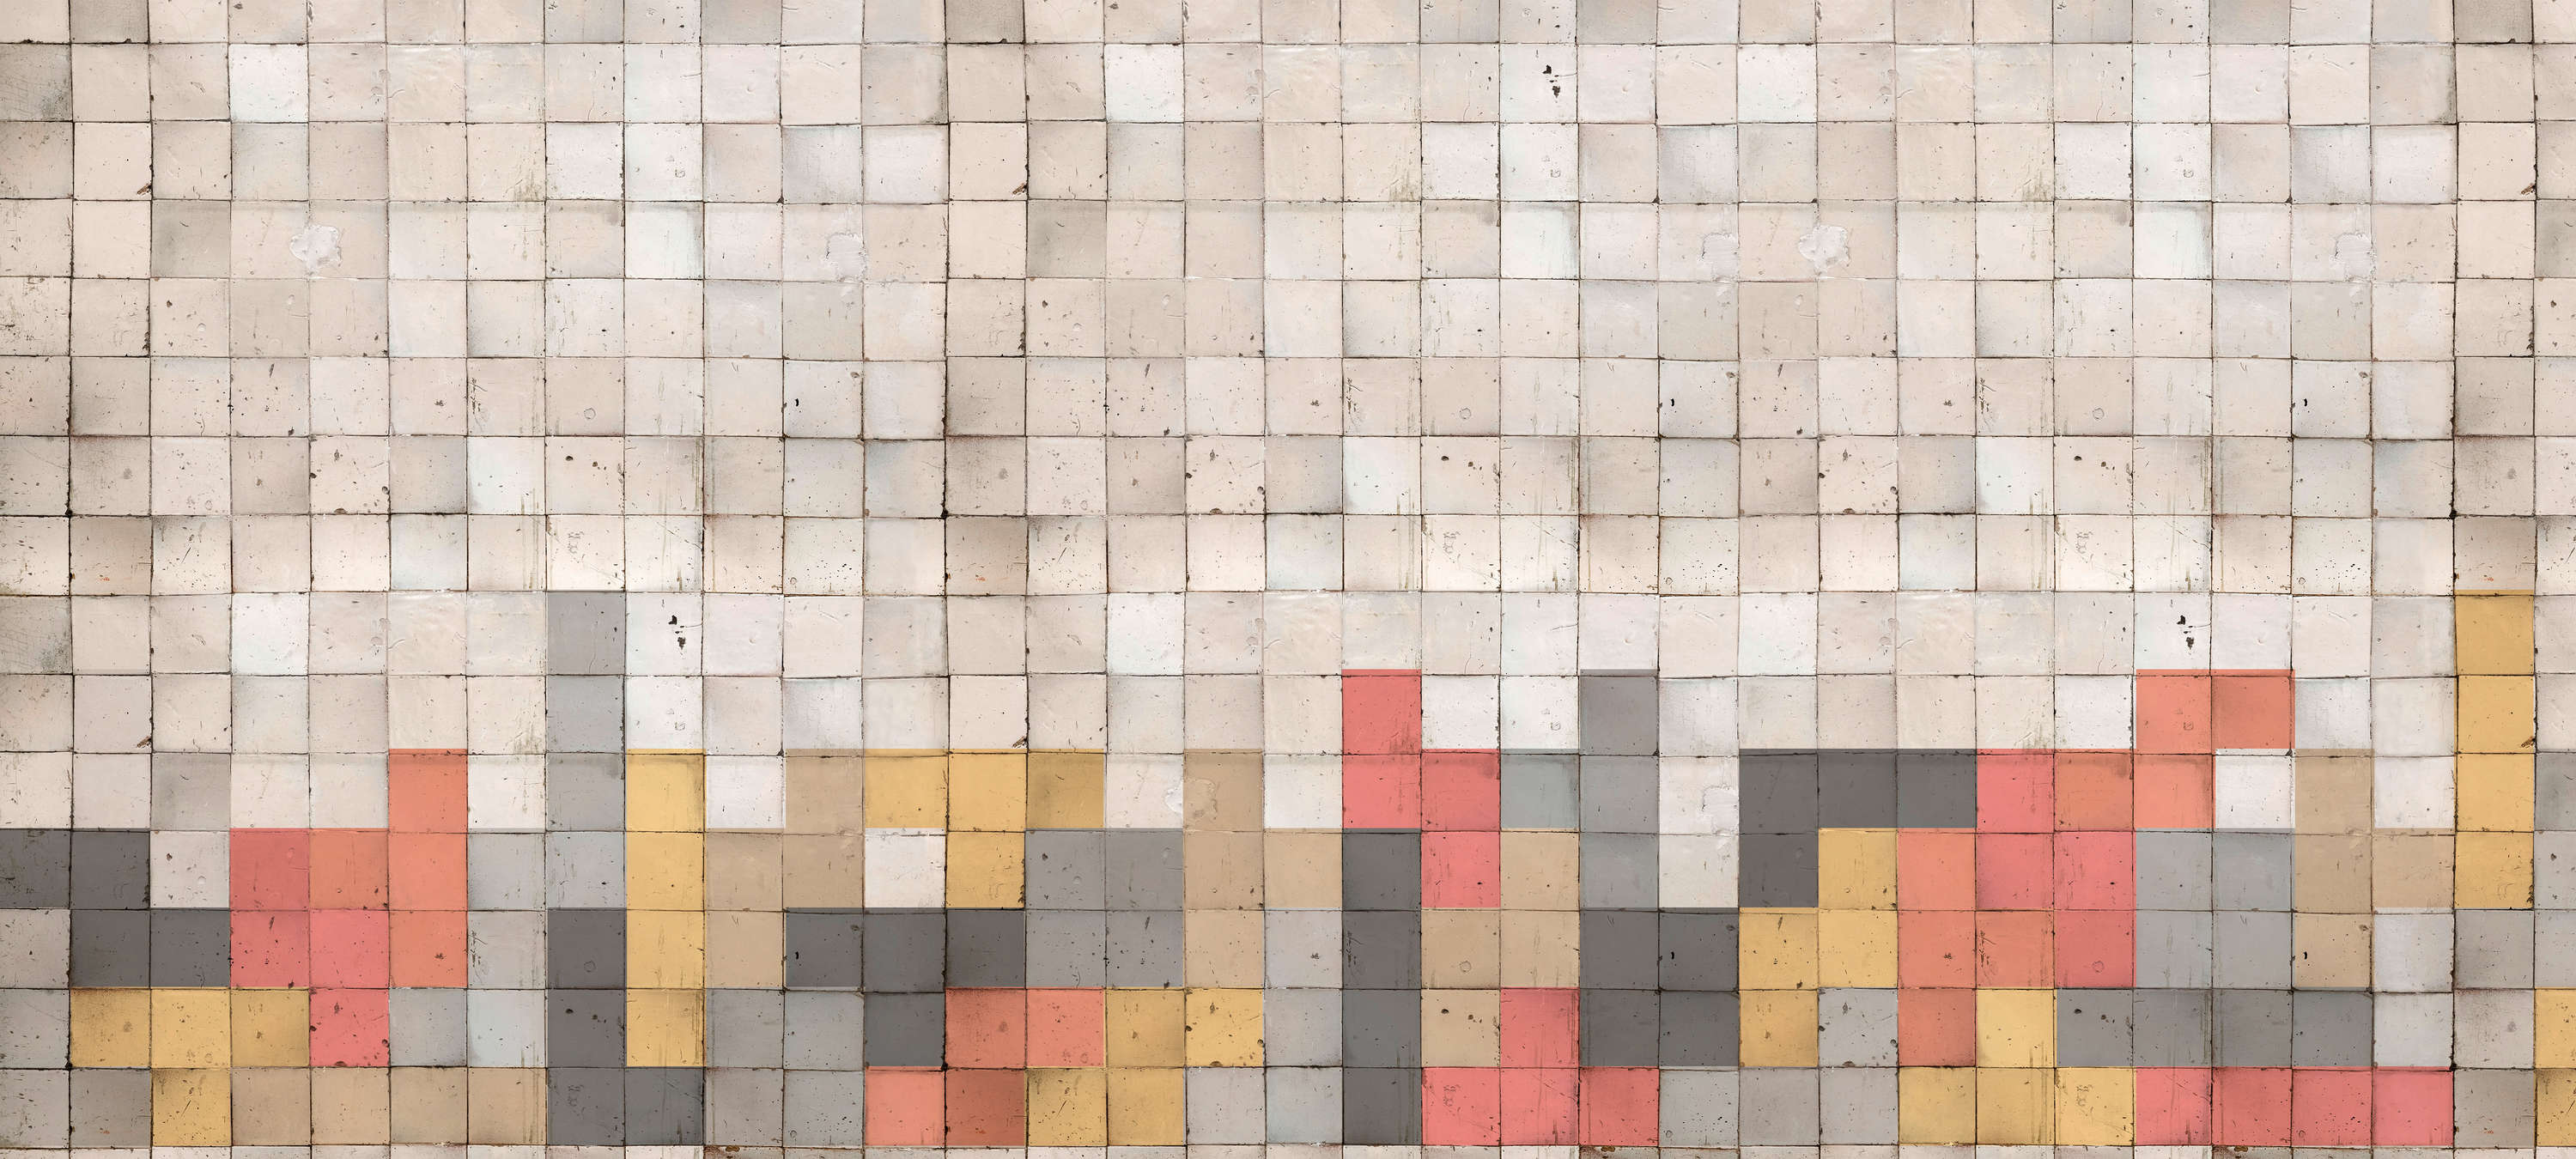             Carta da parati a mosaico con motivo a blocchi di cemento - Grigio, arancione, giallo
        